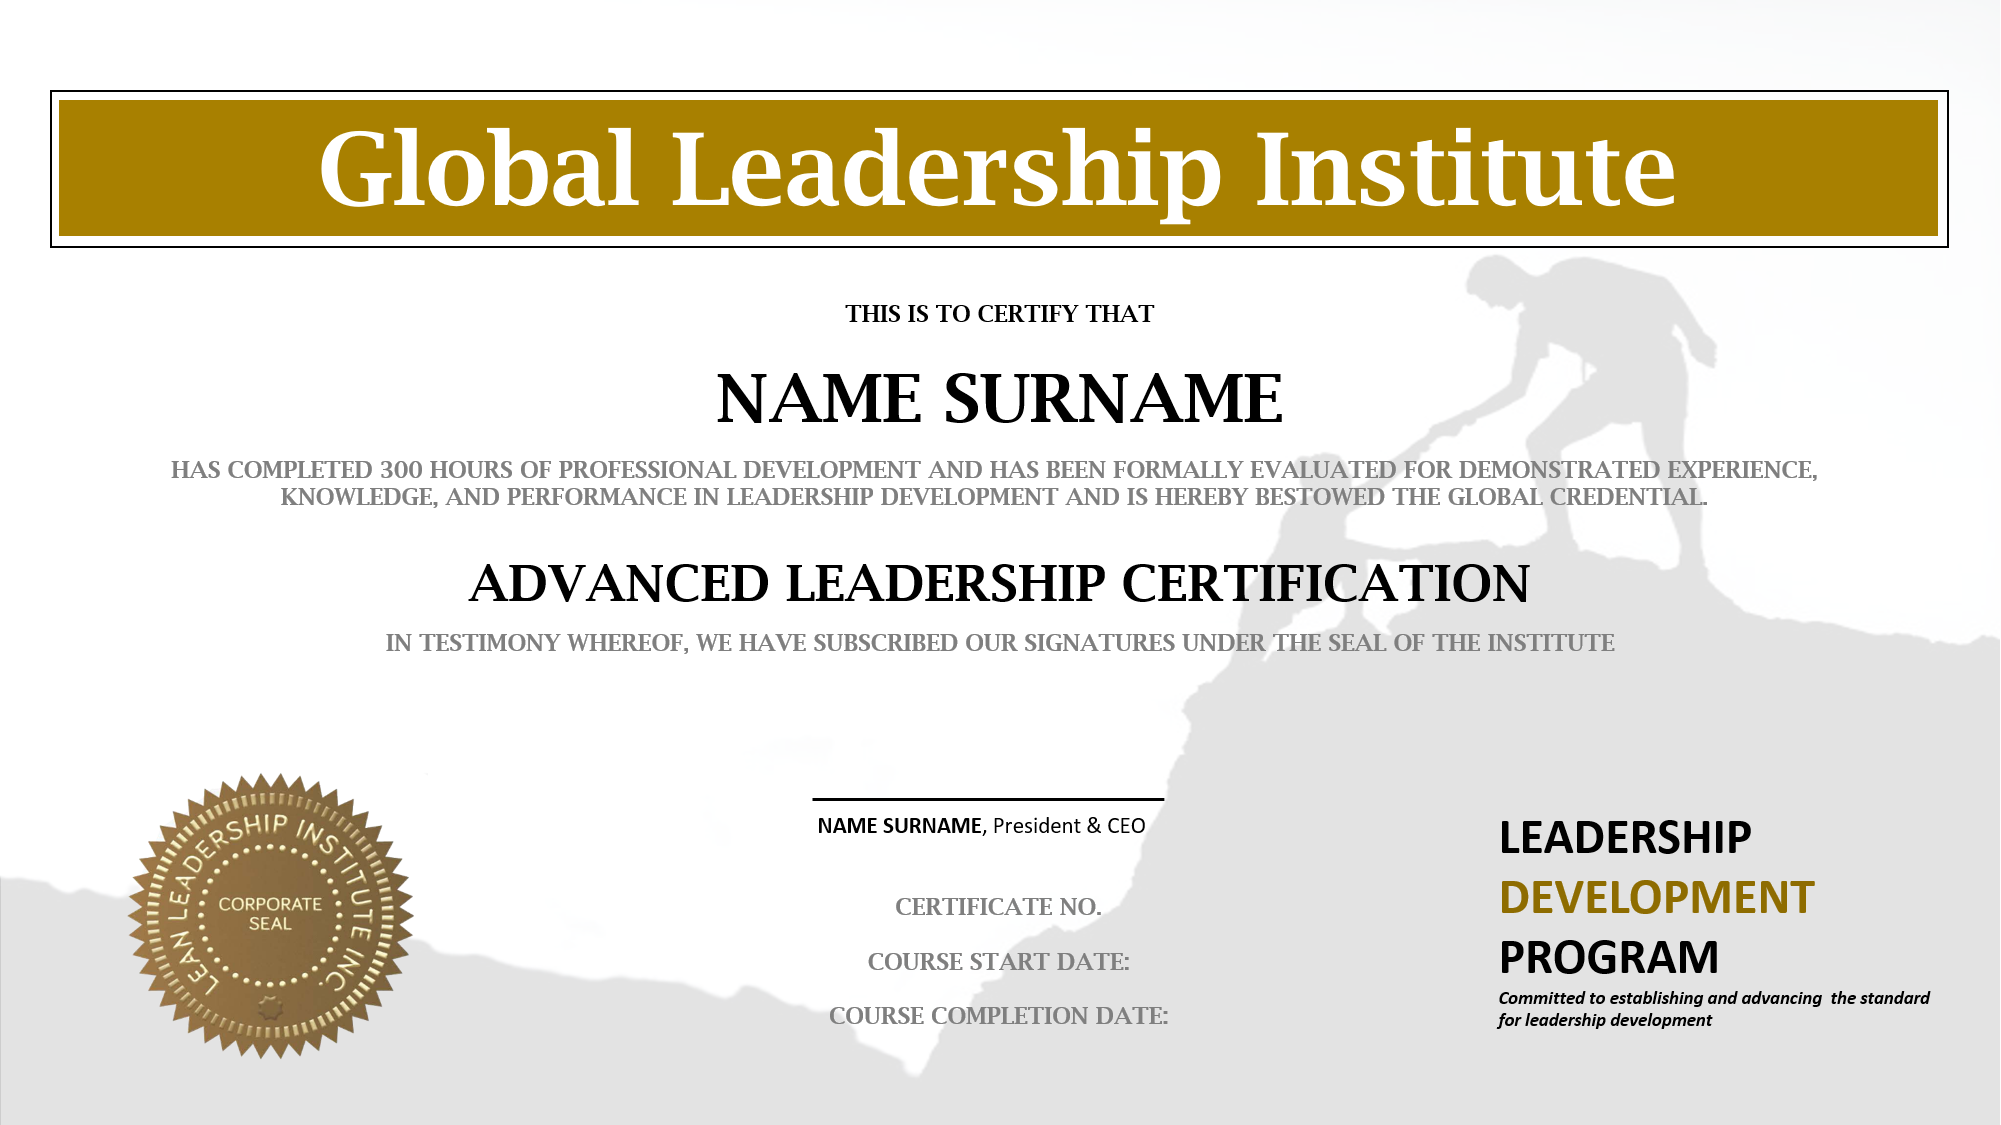 Leadership Certification The Global Leadership Institute